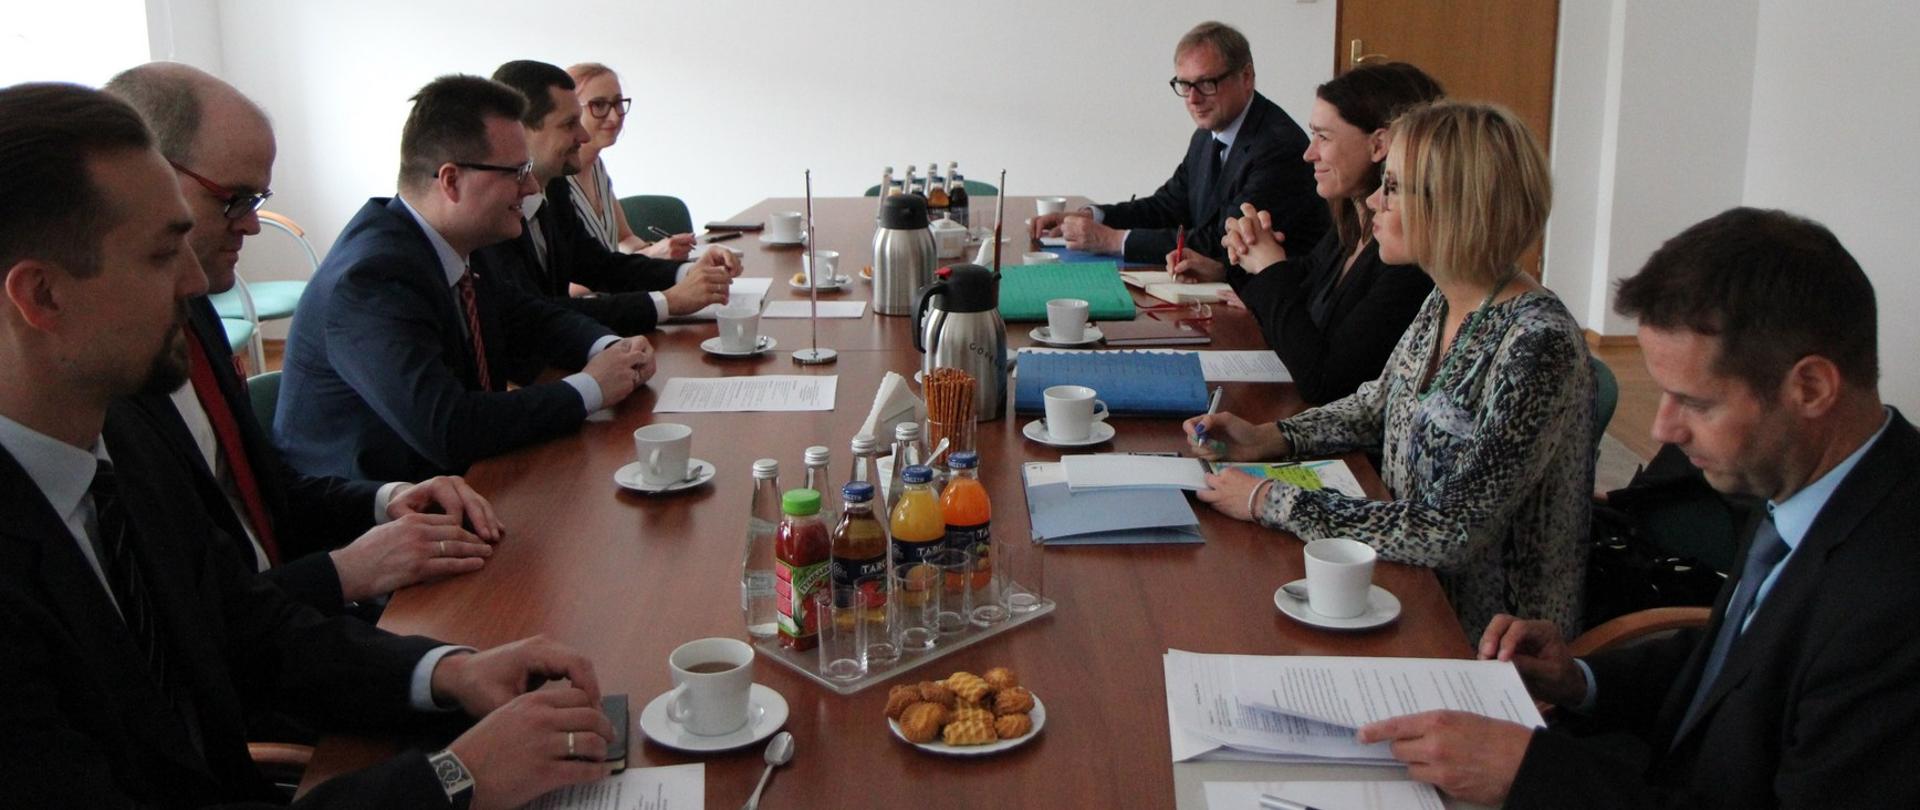 Spotkanie wiceministra A. Bittela z wiceminister ds. europejskich i ochrony konsumentów kraju związkowego Brandeburgii A. Quart